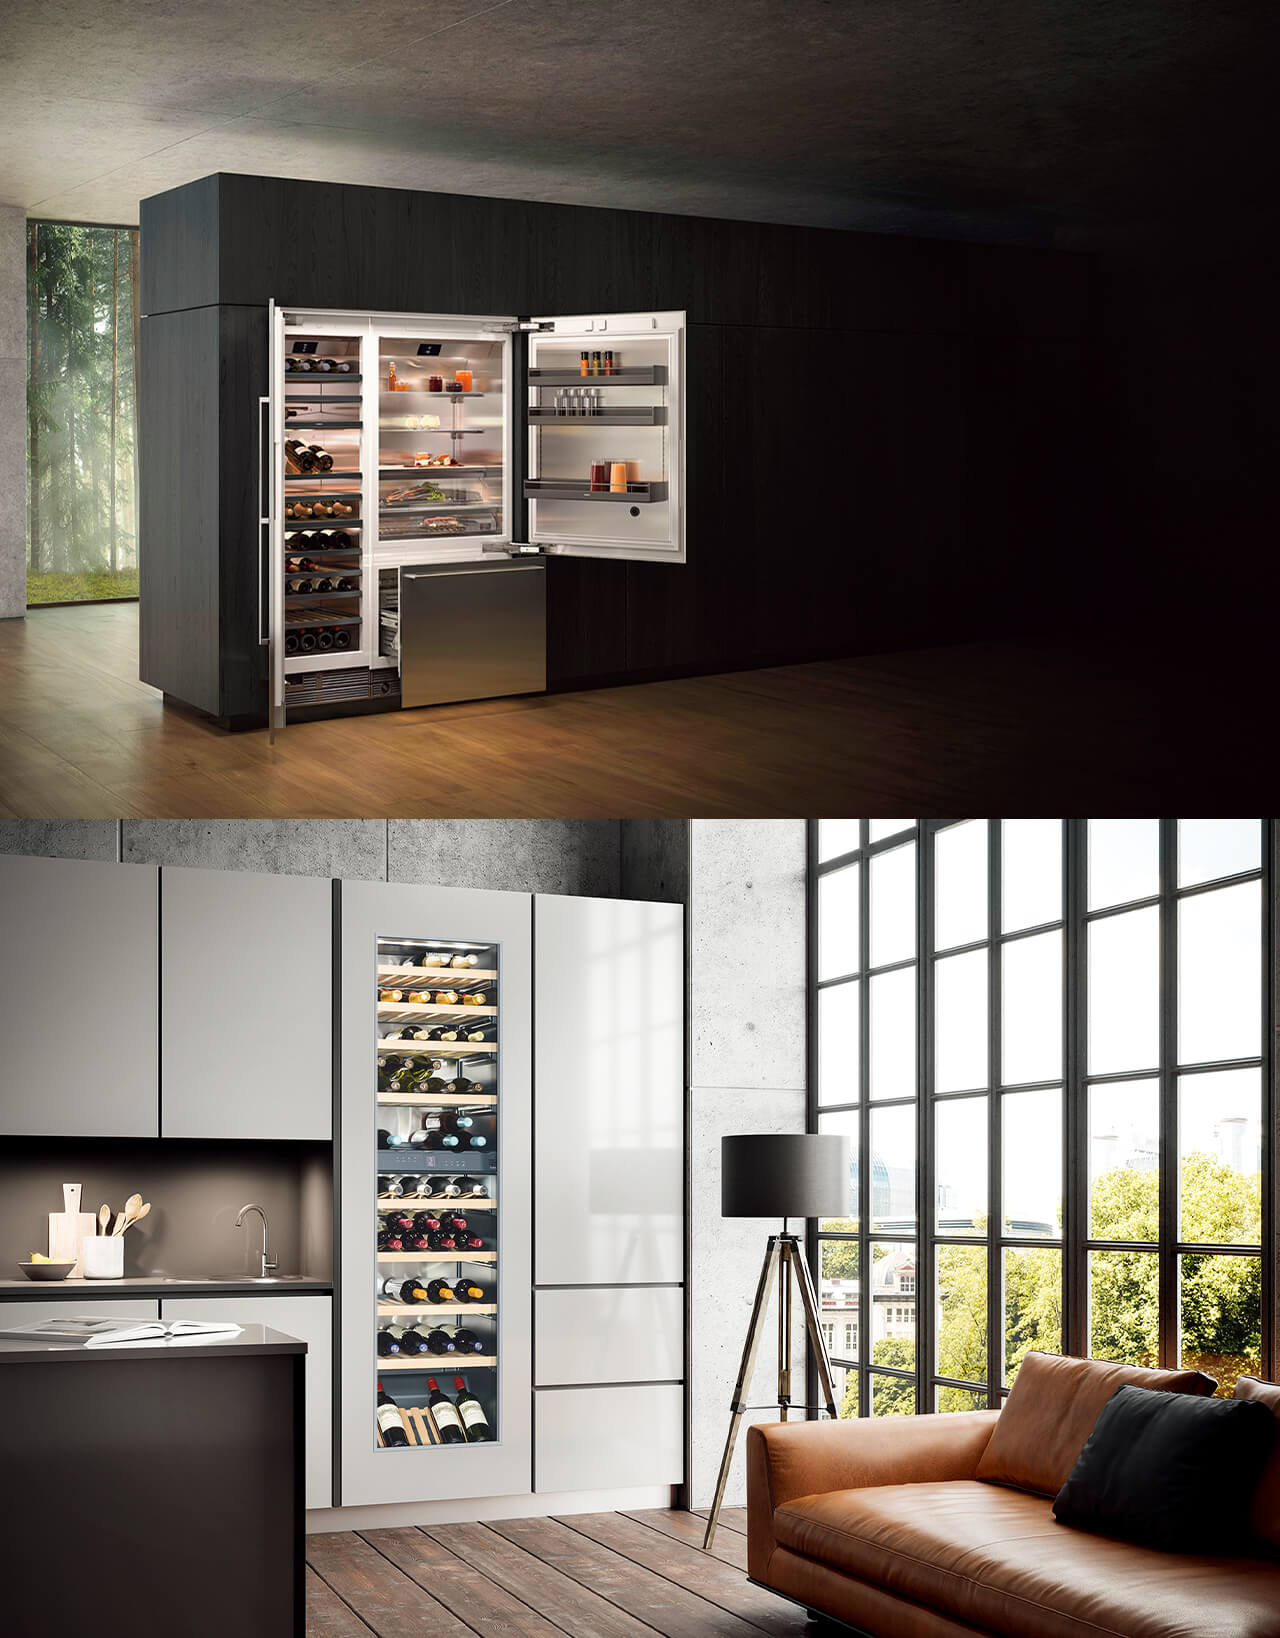 家具化するハイエンド冷蔵庫&ワインセラー。 リビング冷蔵庫をご存じですか